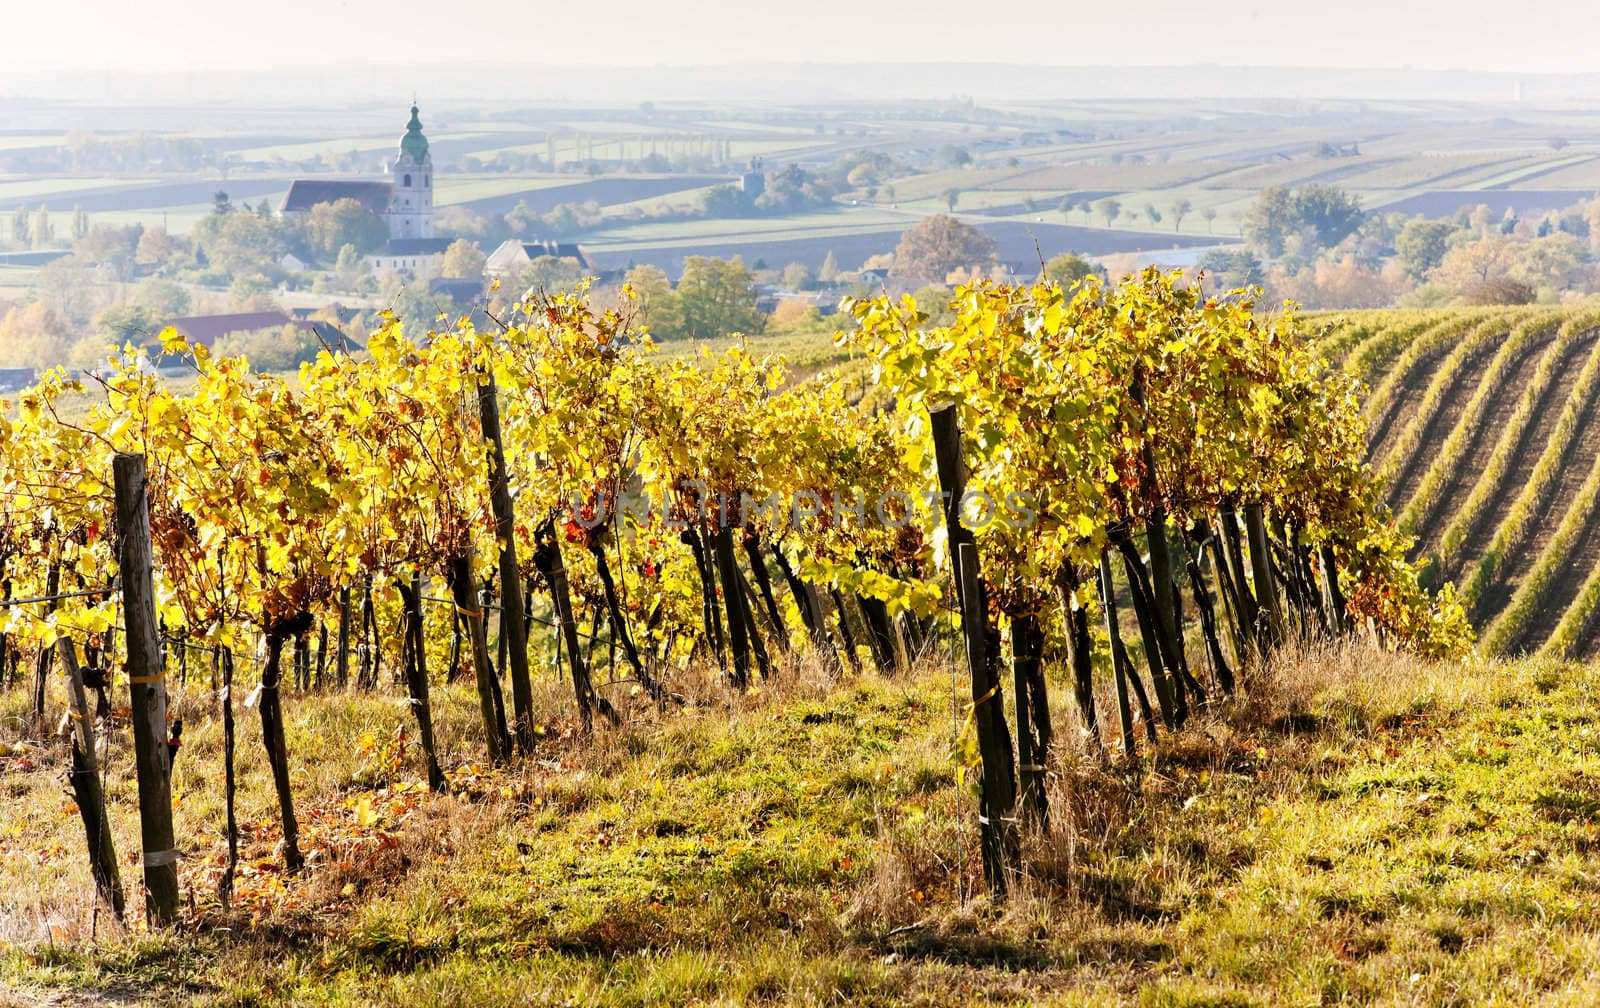 vineyards in autumn, Unterretzbach, Lower Austria, Austria by phbcz